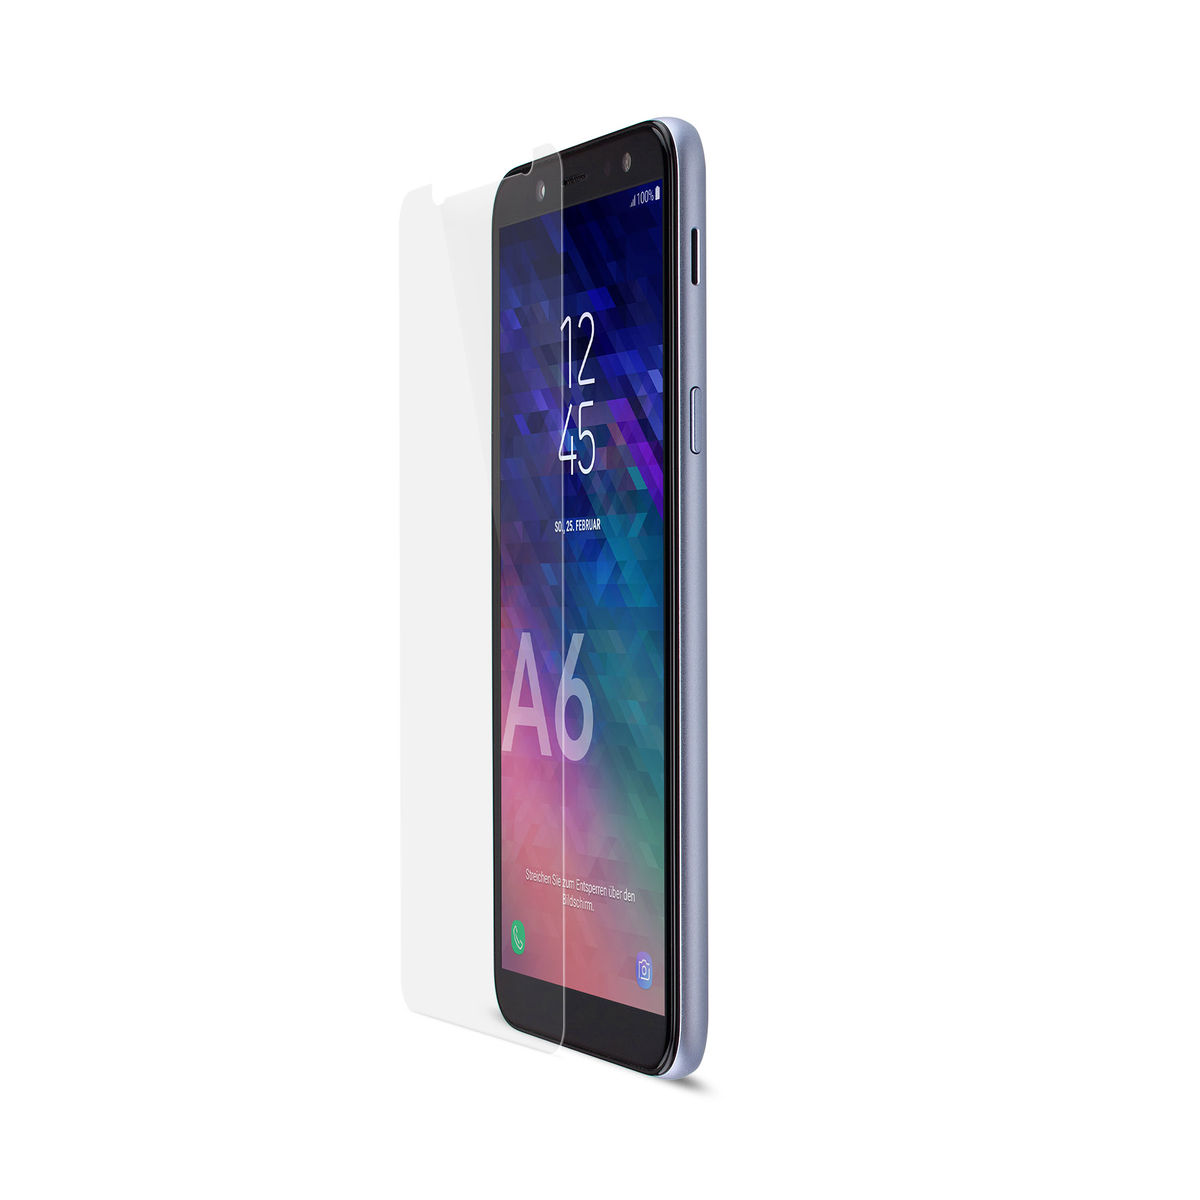 ARTWIZZ SecondDisplay Displayschutz(für Samsung Galaxy (2018)) A6